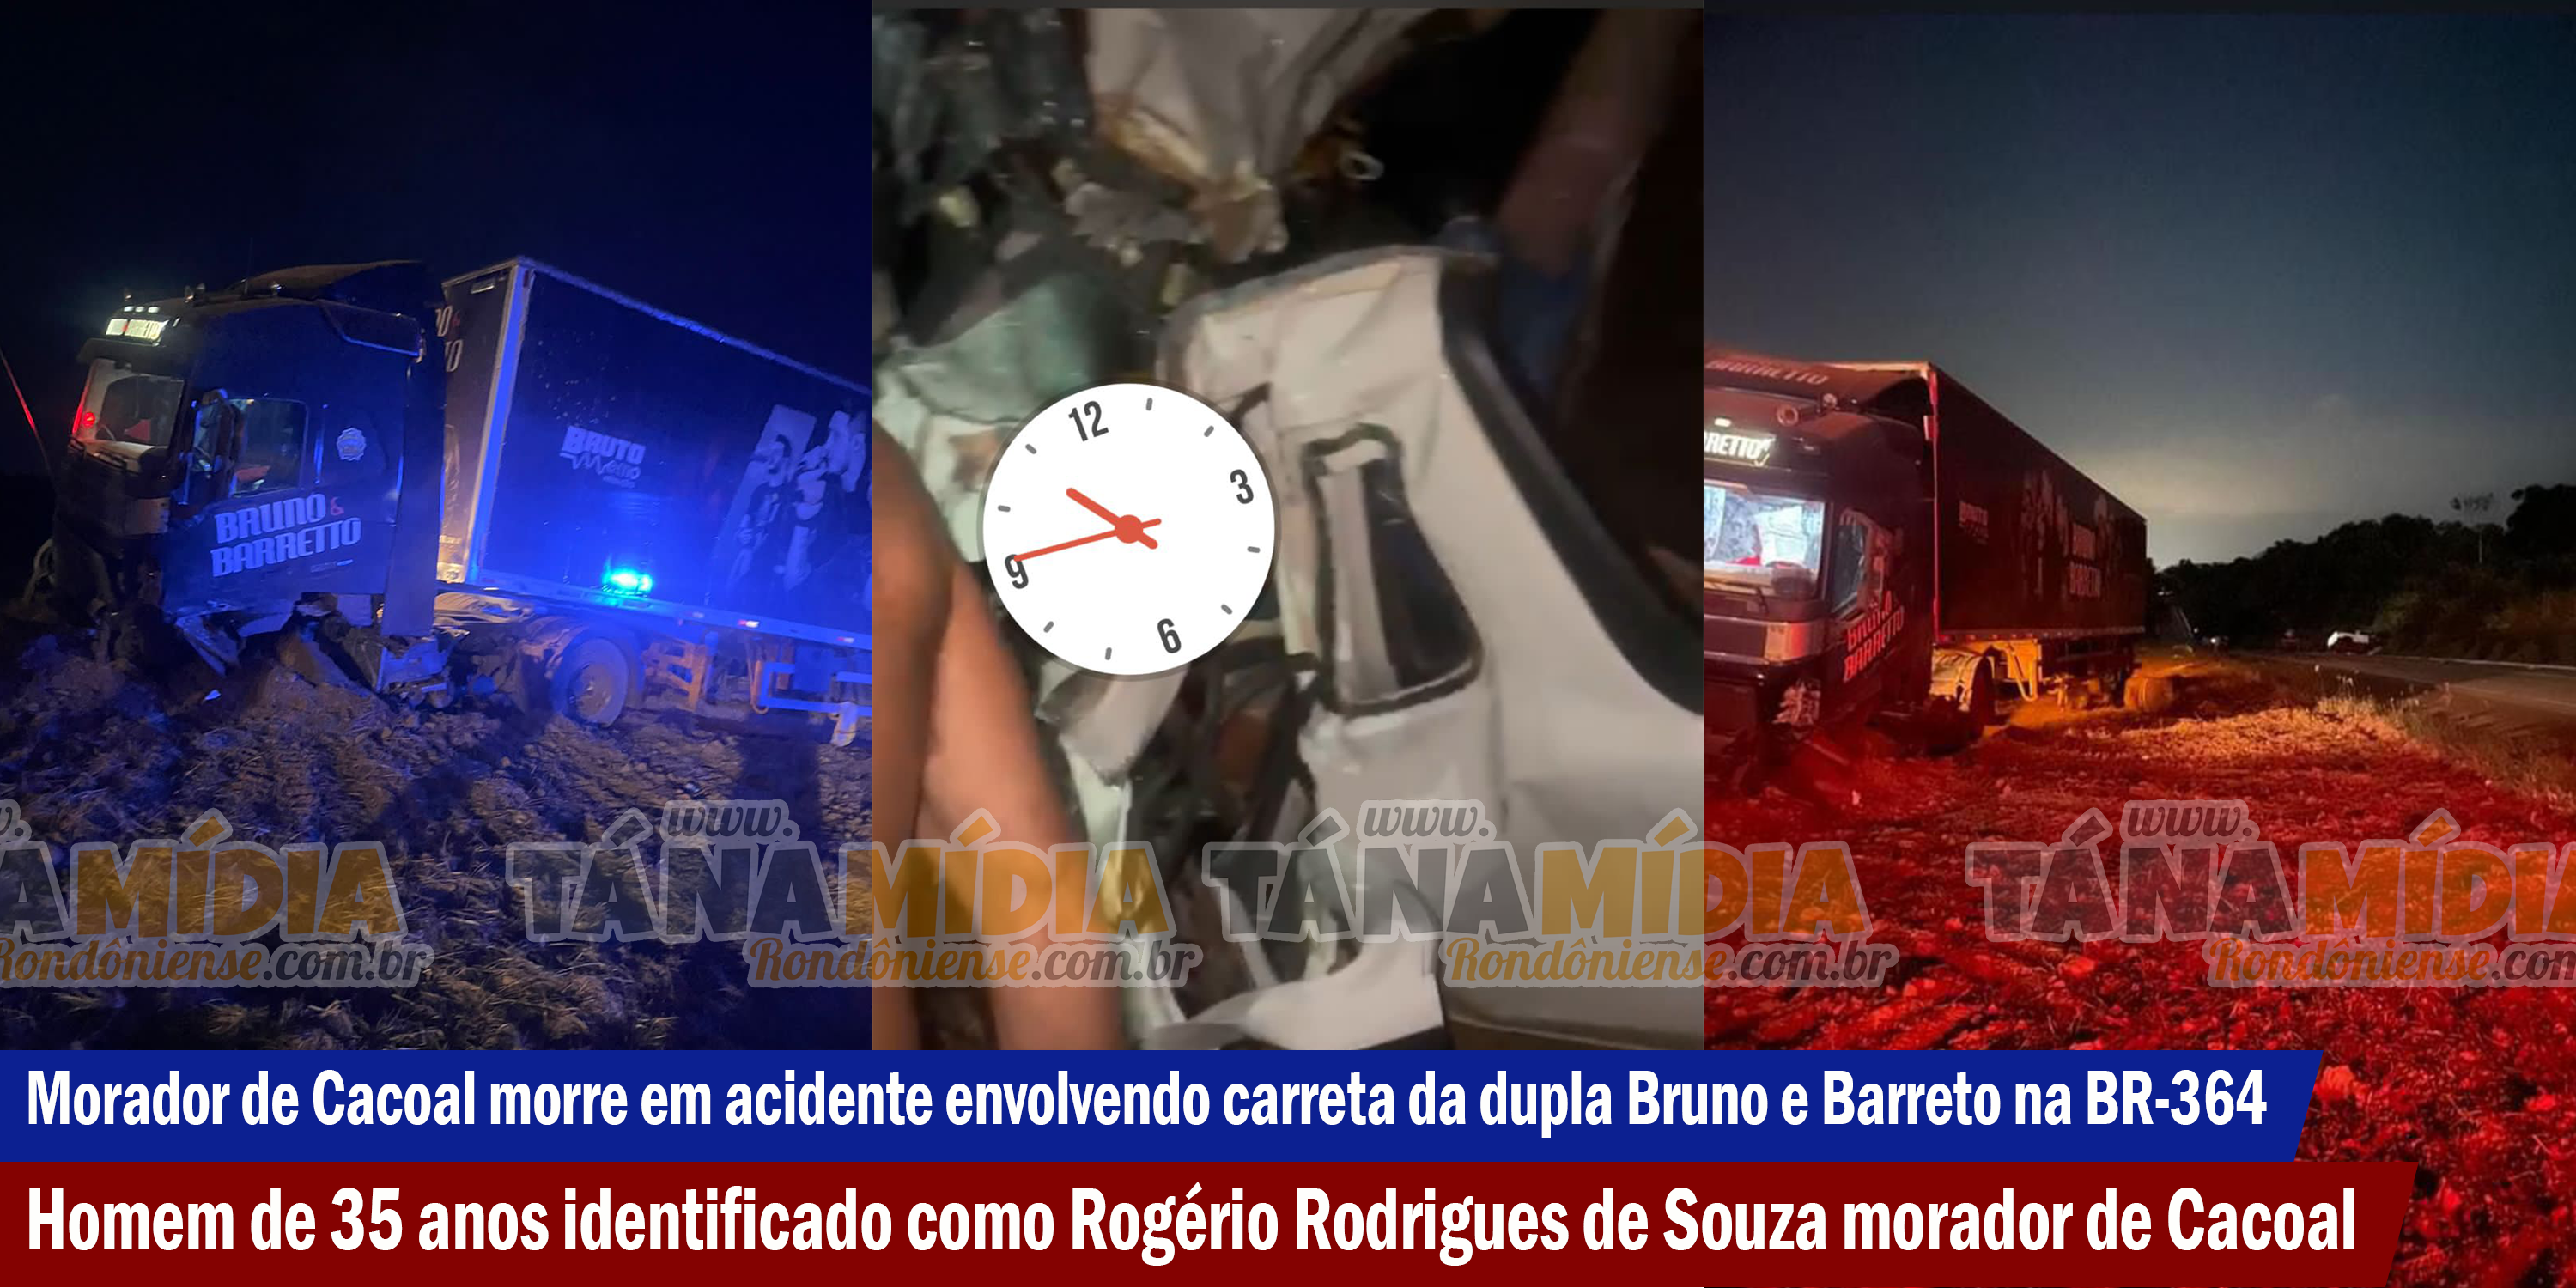 Morador de Cacoal morre em acidente envolvendo carreta da dupla Bruno e Barreto na BR-364